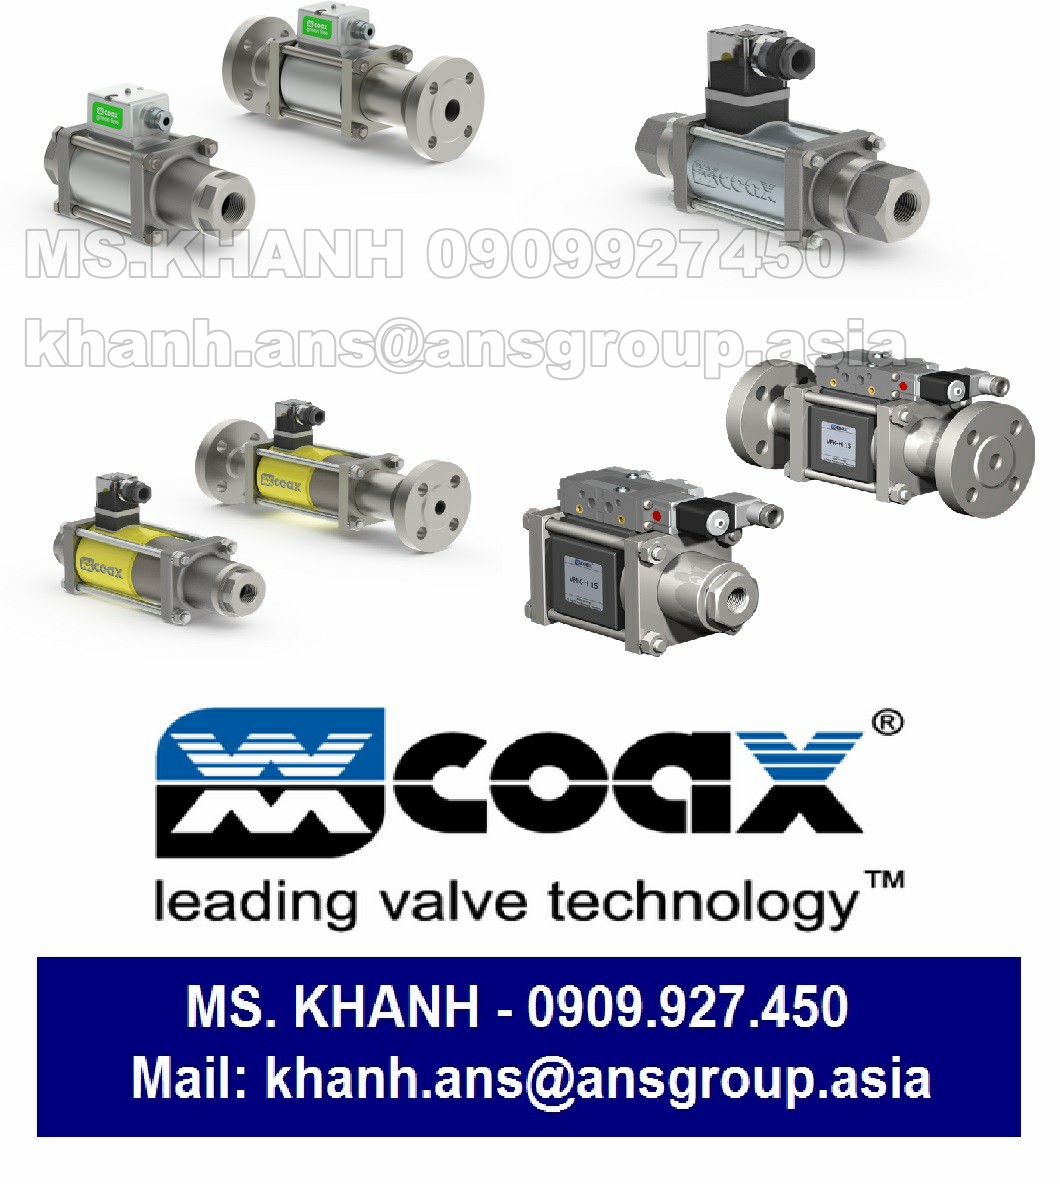 van-fk-20-nc-coax-2-2-way-valve-coax-valves-inc-viet-nam.png